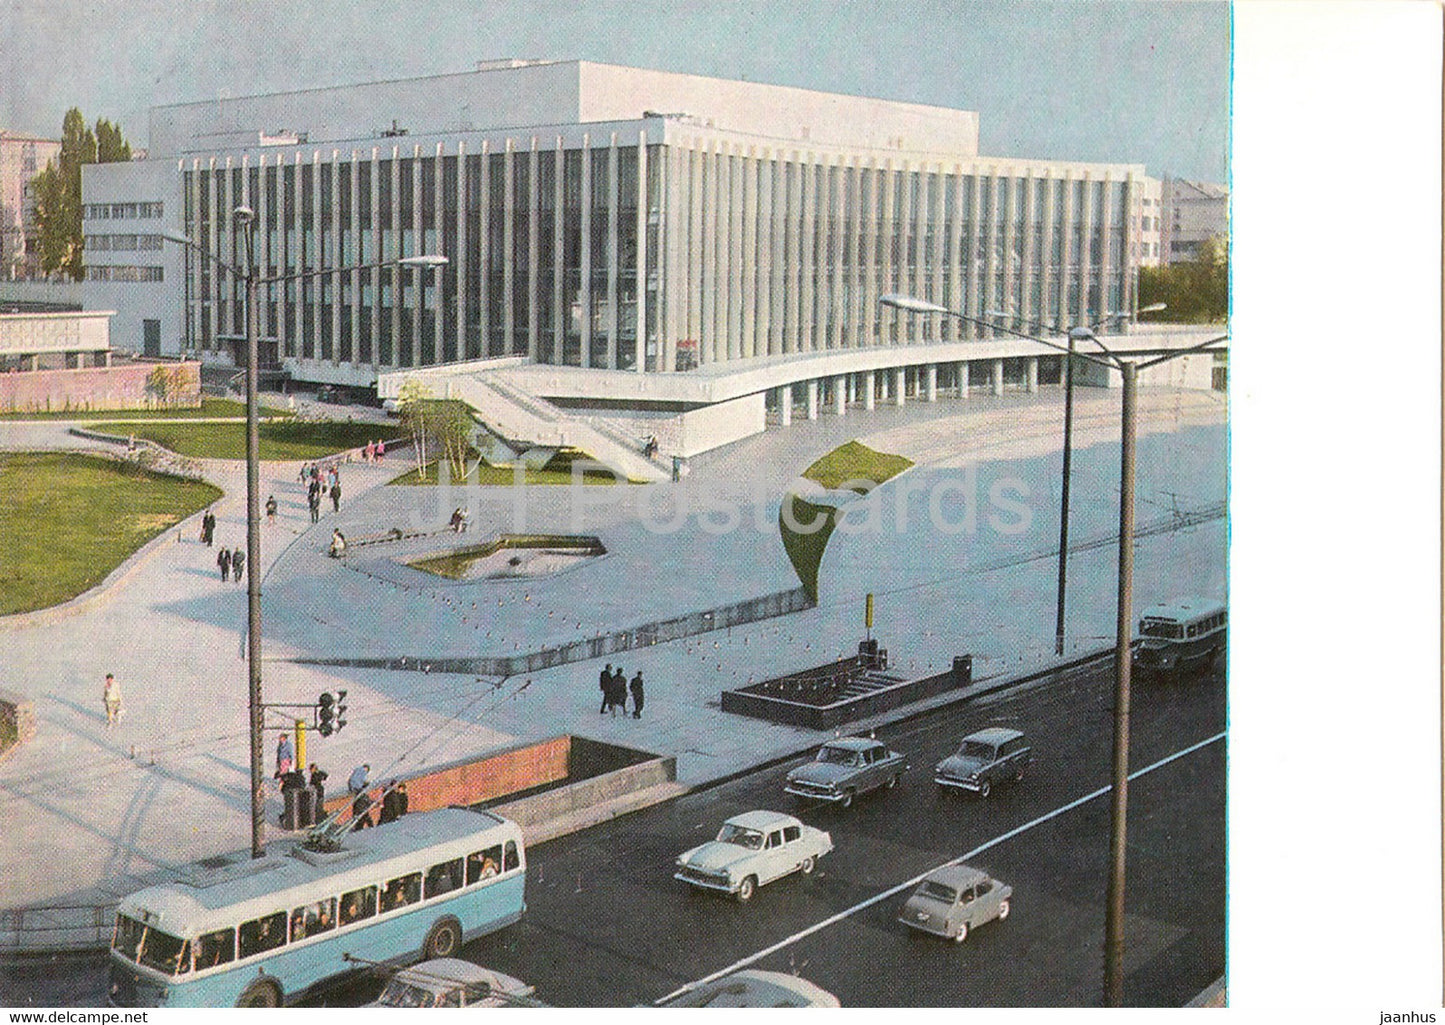 Kyiv - Kiev - Culture Palace Ukraina - trolleybus - car Volga - postal stationery - 1971 - Ukraine USSR - unused - JH Postcards